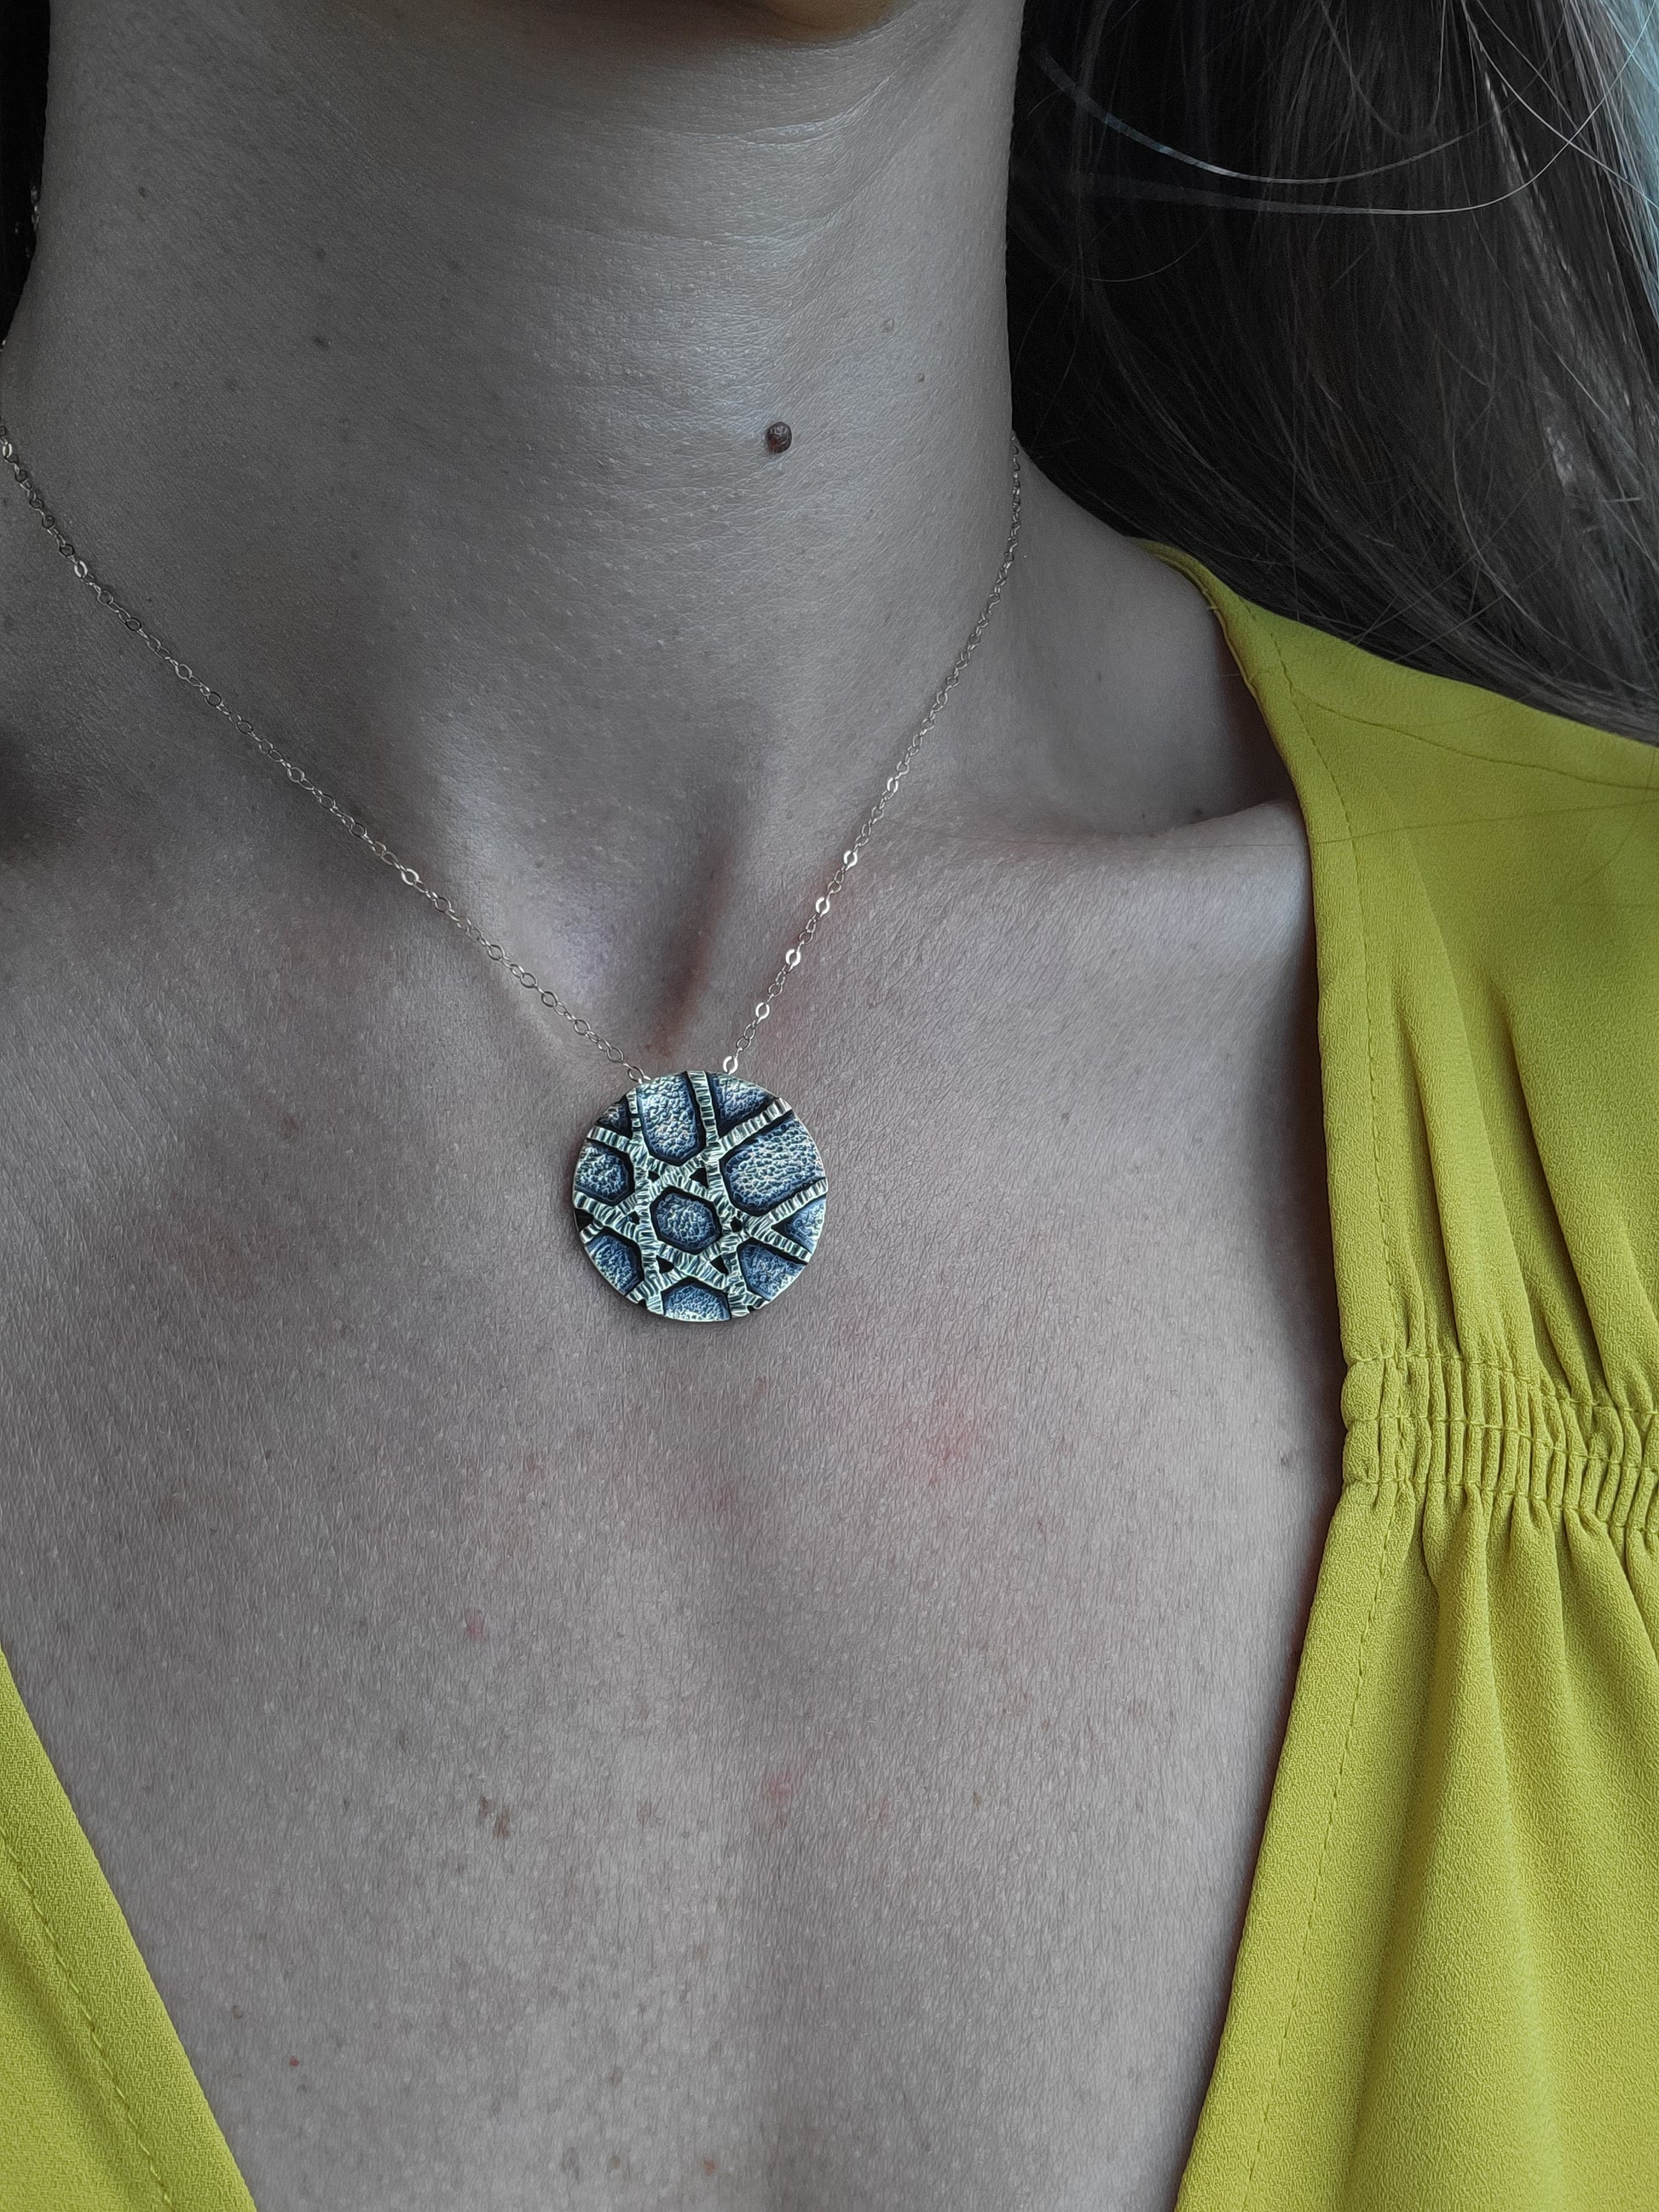 14K Gold Star of David necklace, a Jewish jewelry piece by Jaclyn Nicole, jewelry artist of inspirational jewelry